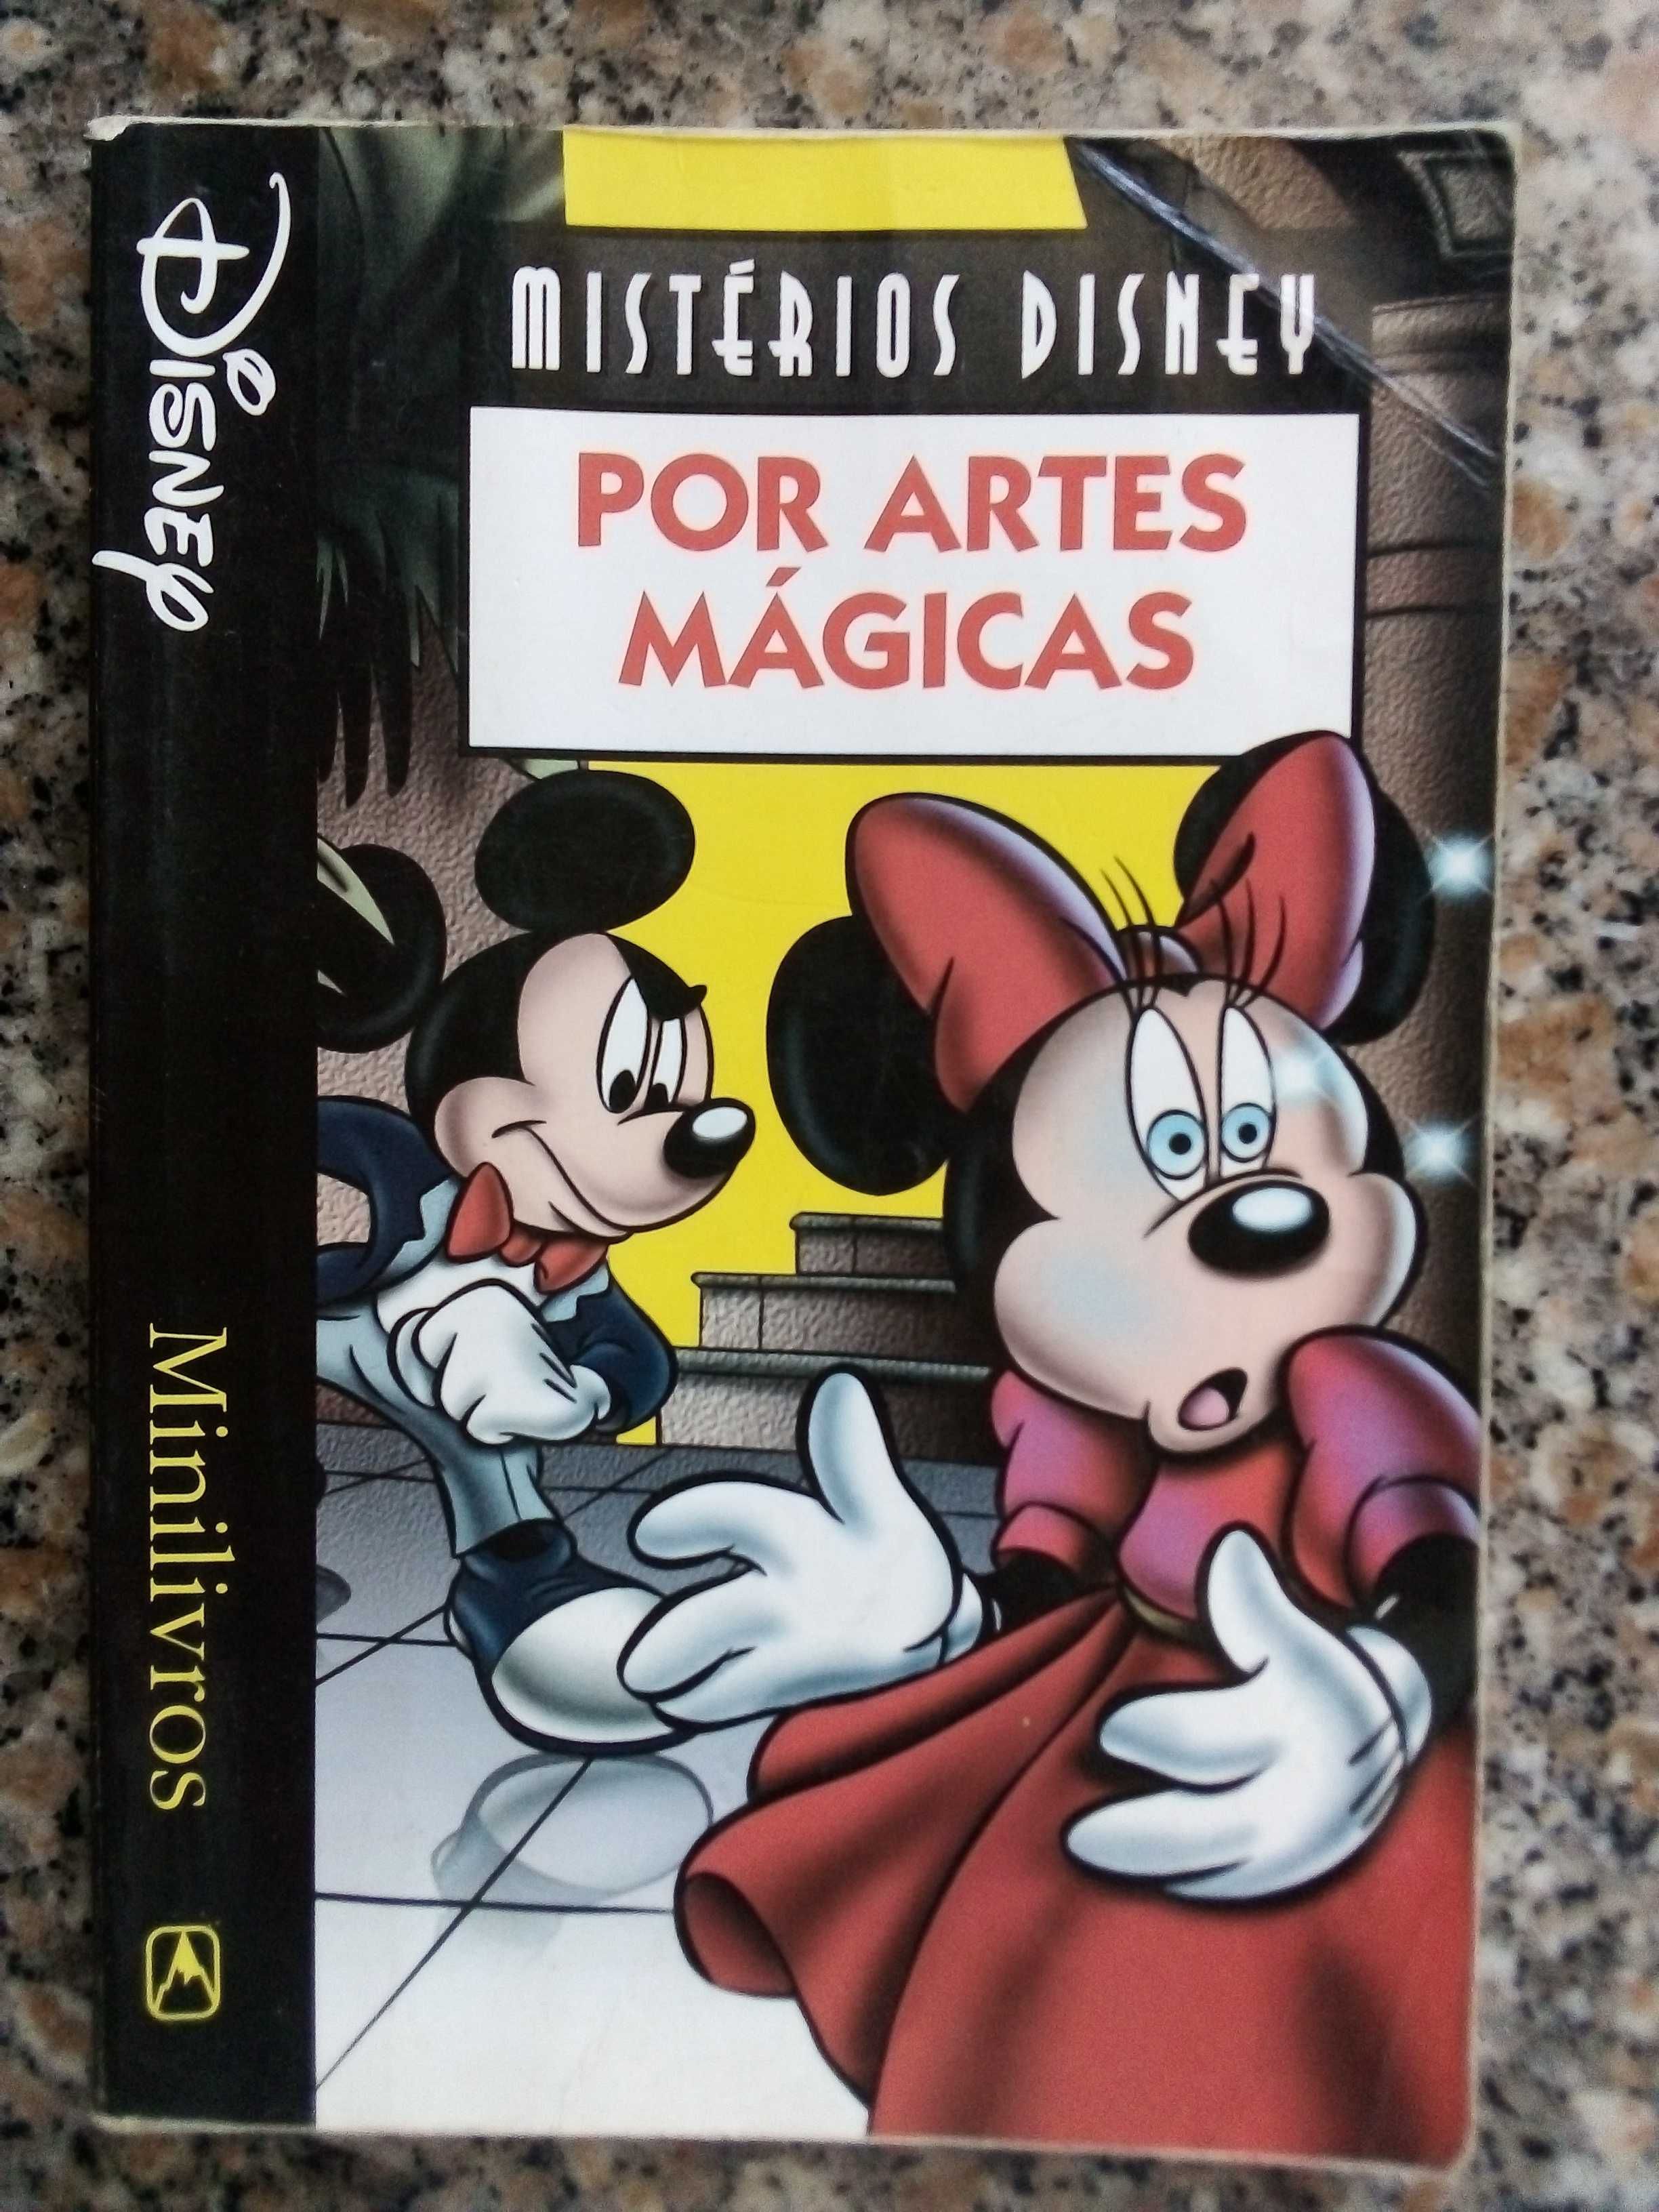 Mistérios Disney - Por artes mágicas [Portes incluídos]